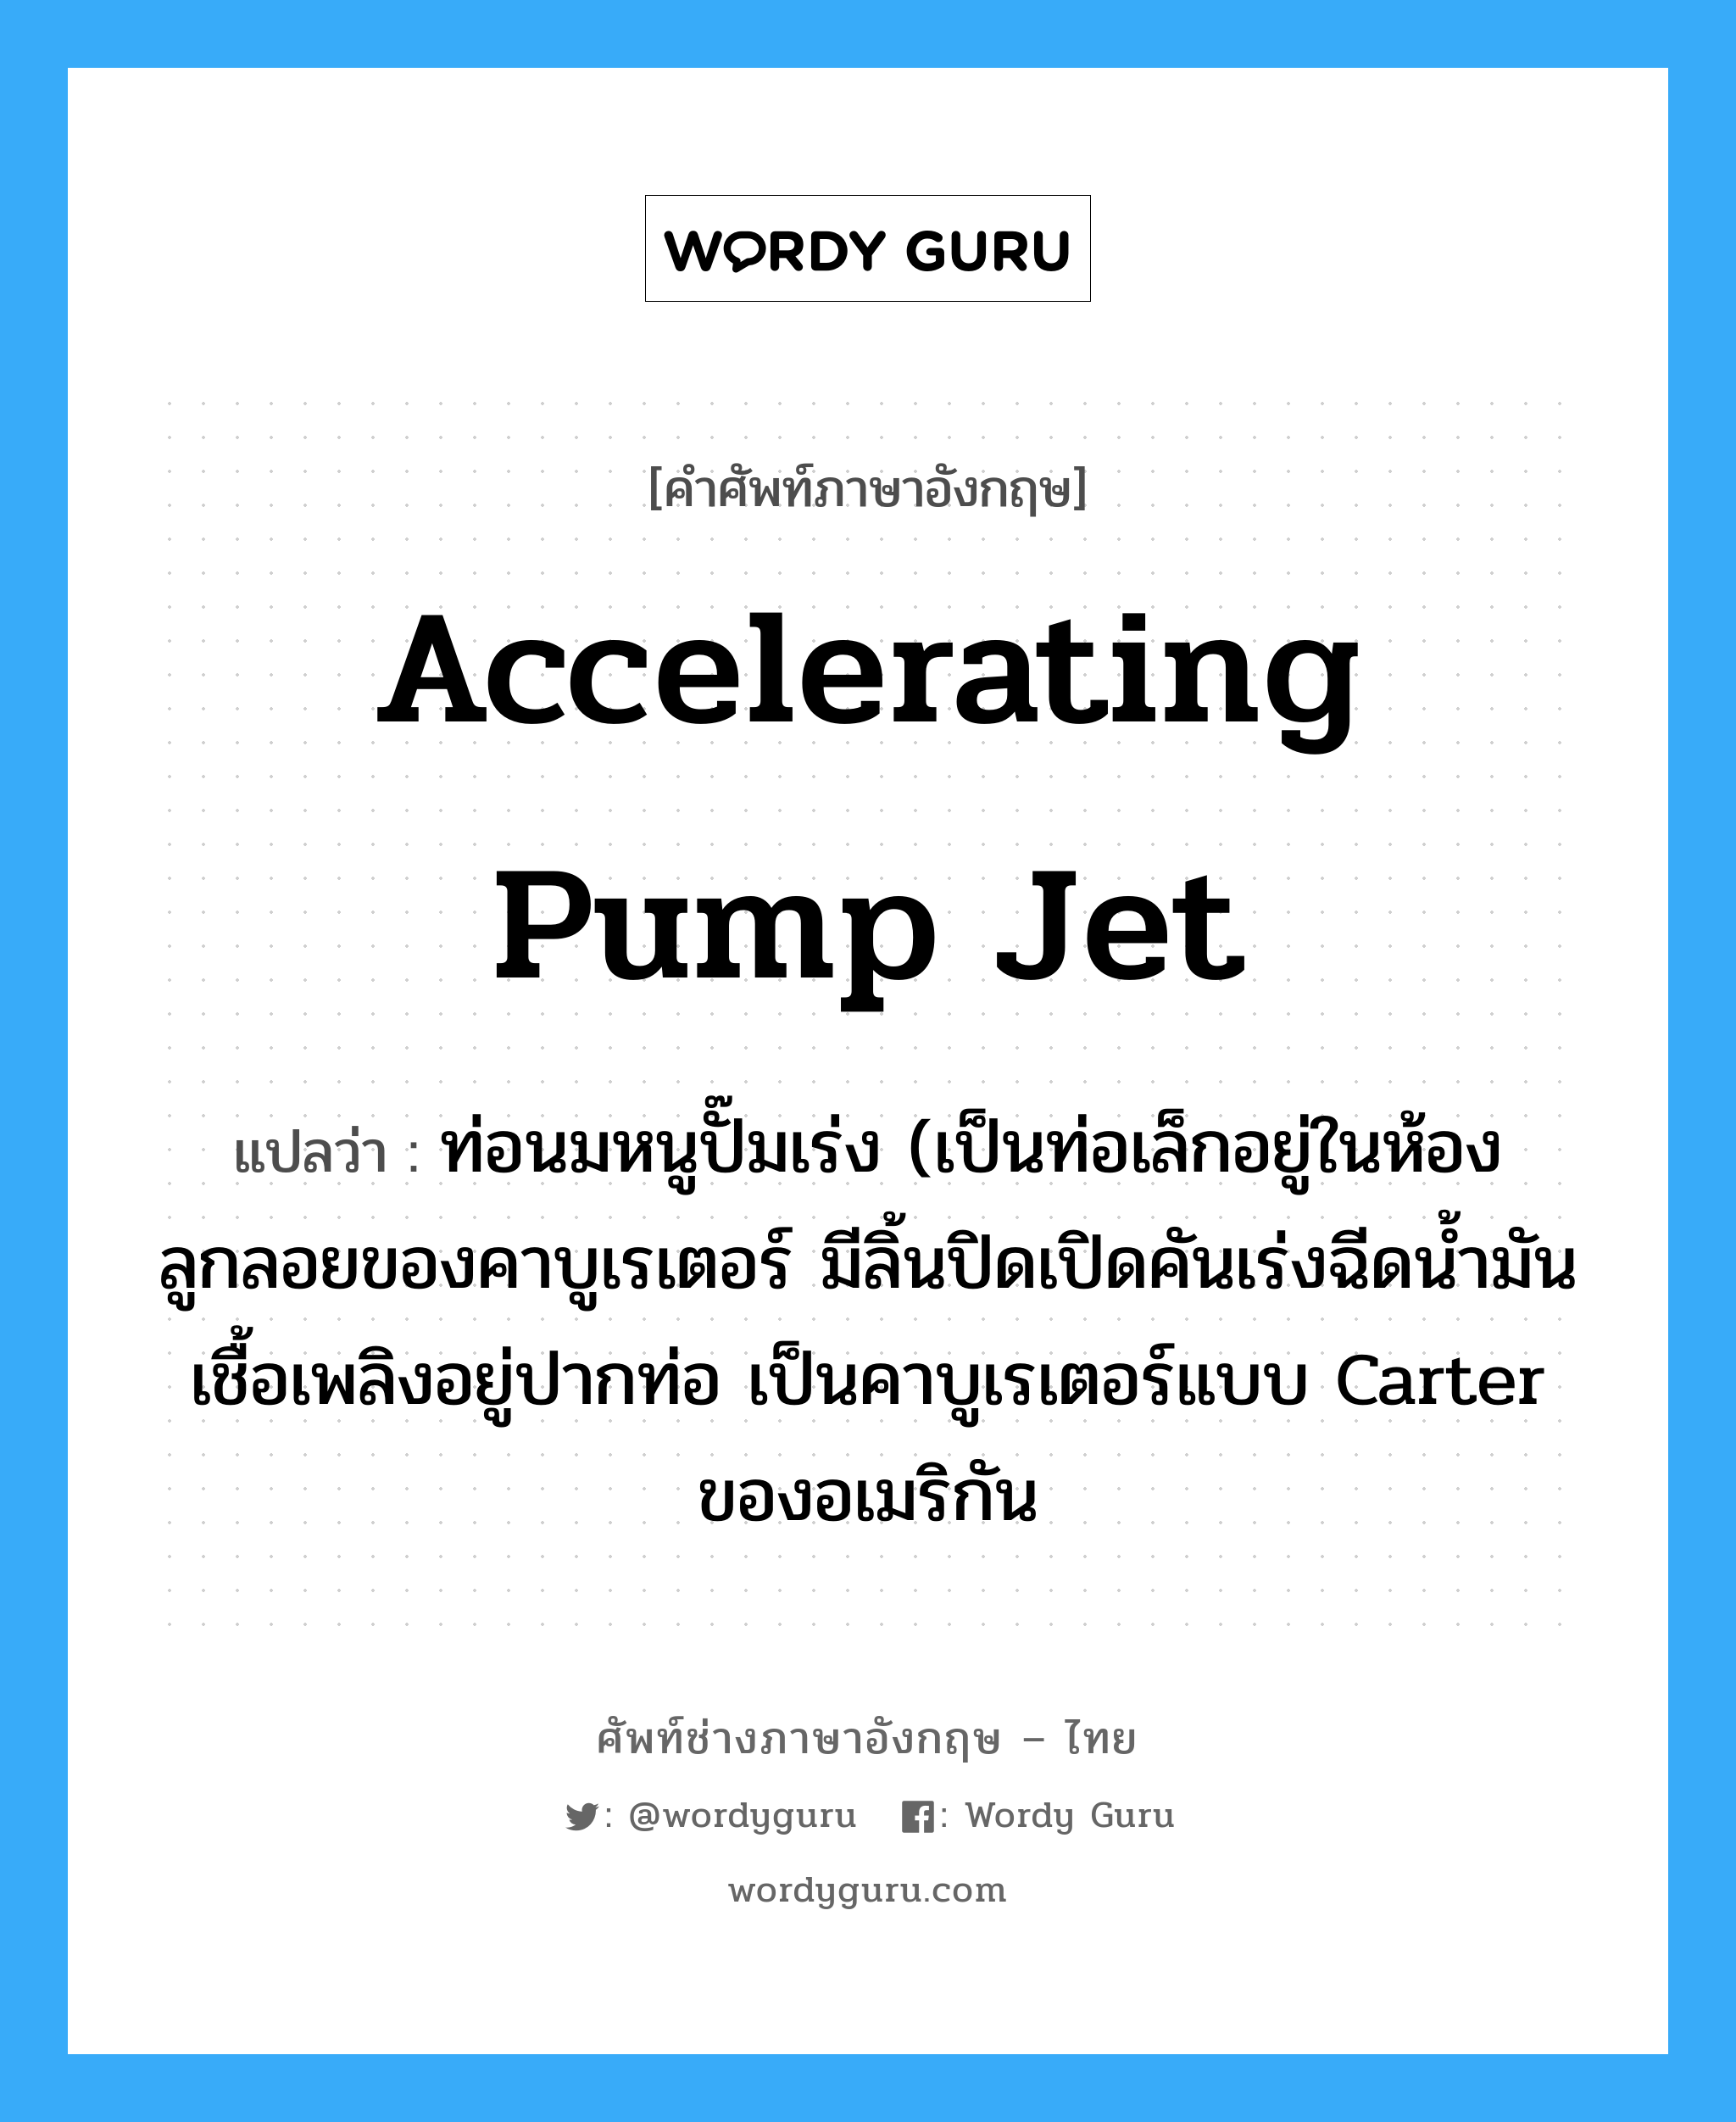 accelerating pump jet แปลว่า?, คำศัพท์ช่างภาษาอังกฤษ - ไทย accelerating pump jet คำศัพท์ภาษาอังกฤษ accelerating pump jet แปลว่า ท่อนมหนูปั๊มเร่ง (เป็นท่อเล็กอยู่ในห้องลูกลอยของคาบูเรเตอร์ มีลิ้นปิดเปิดคันเร่งฉีดน้ำมันเชื้อเพลิงอยู่ปากท่อ เป็นคาบูเรเตอร์แบบ Carter ของอเมริกัน